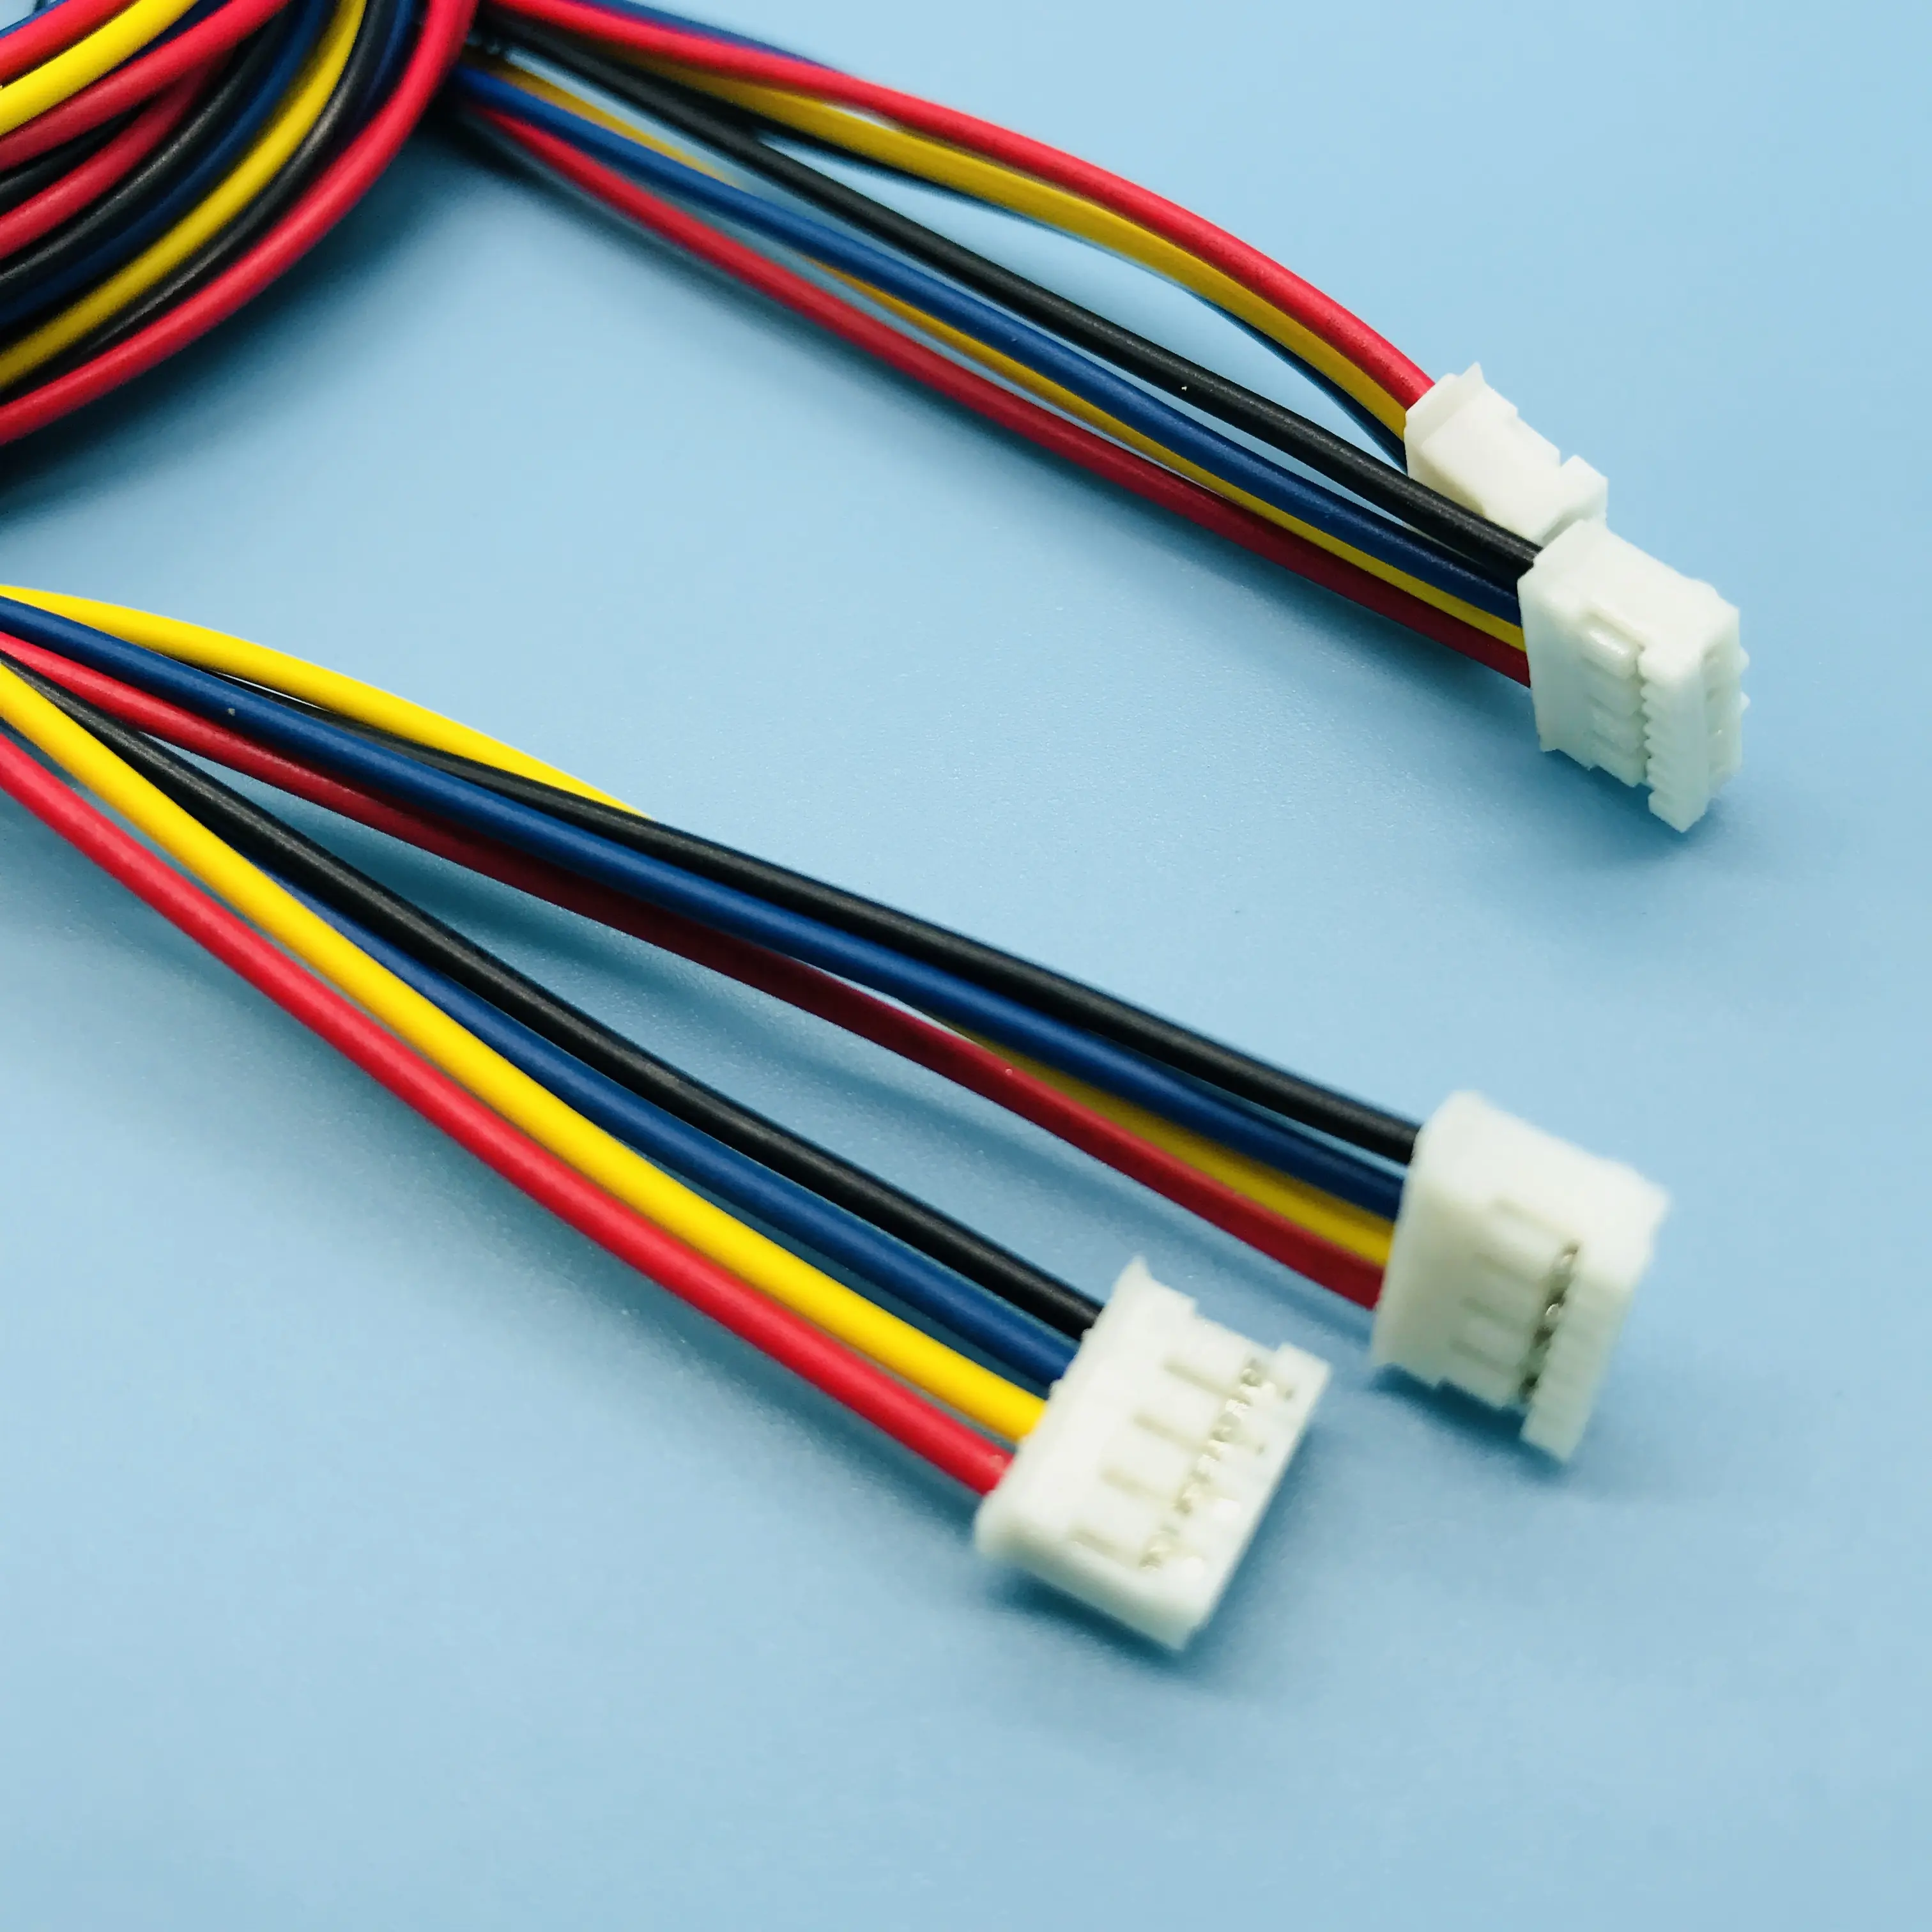 YKT JST PH2.0 5pin konnektör kabloları üreticisi